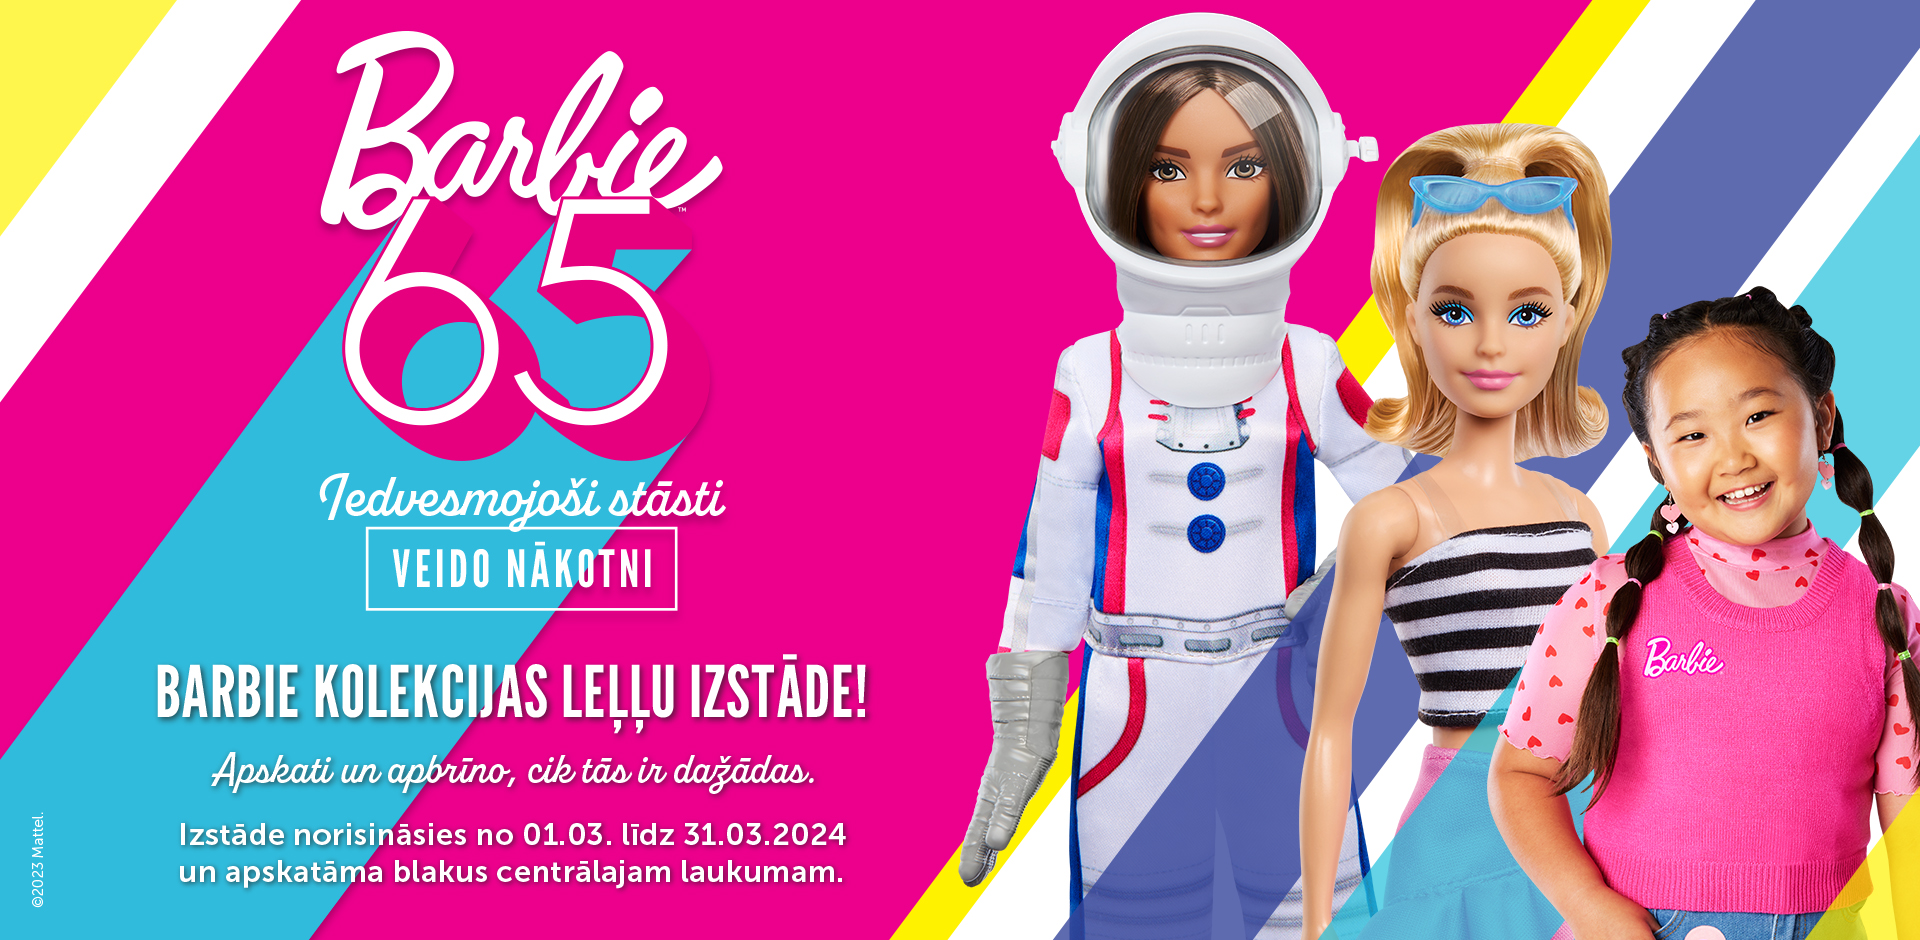 Domina Shopping atklāta izstāde, kas veltīta ikoniskajai lellei Barbie